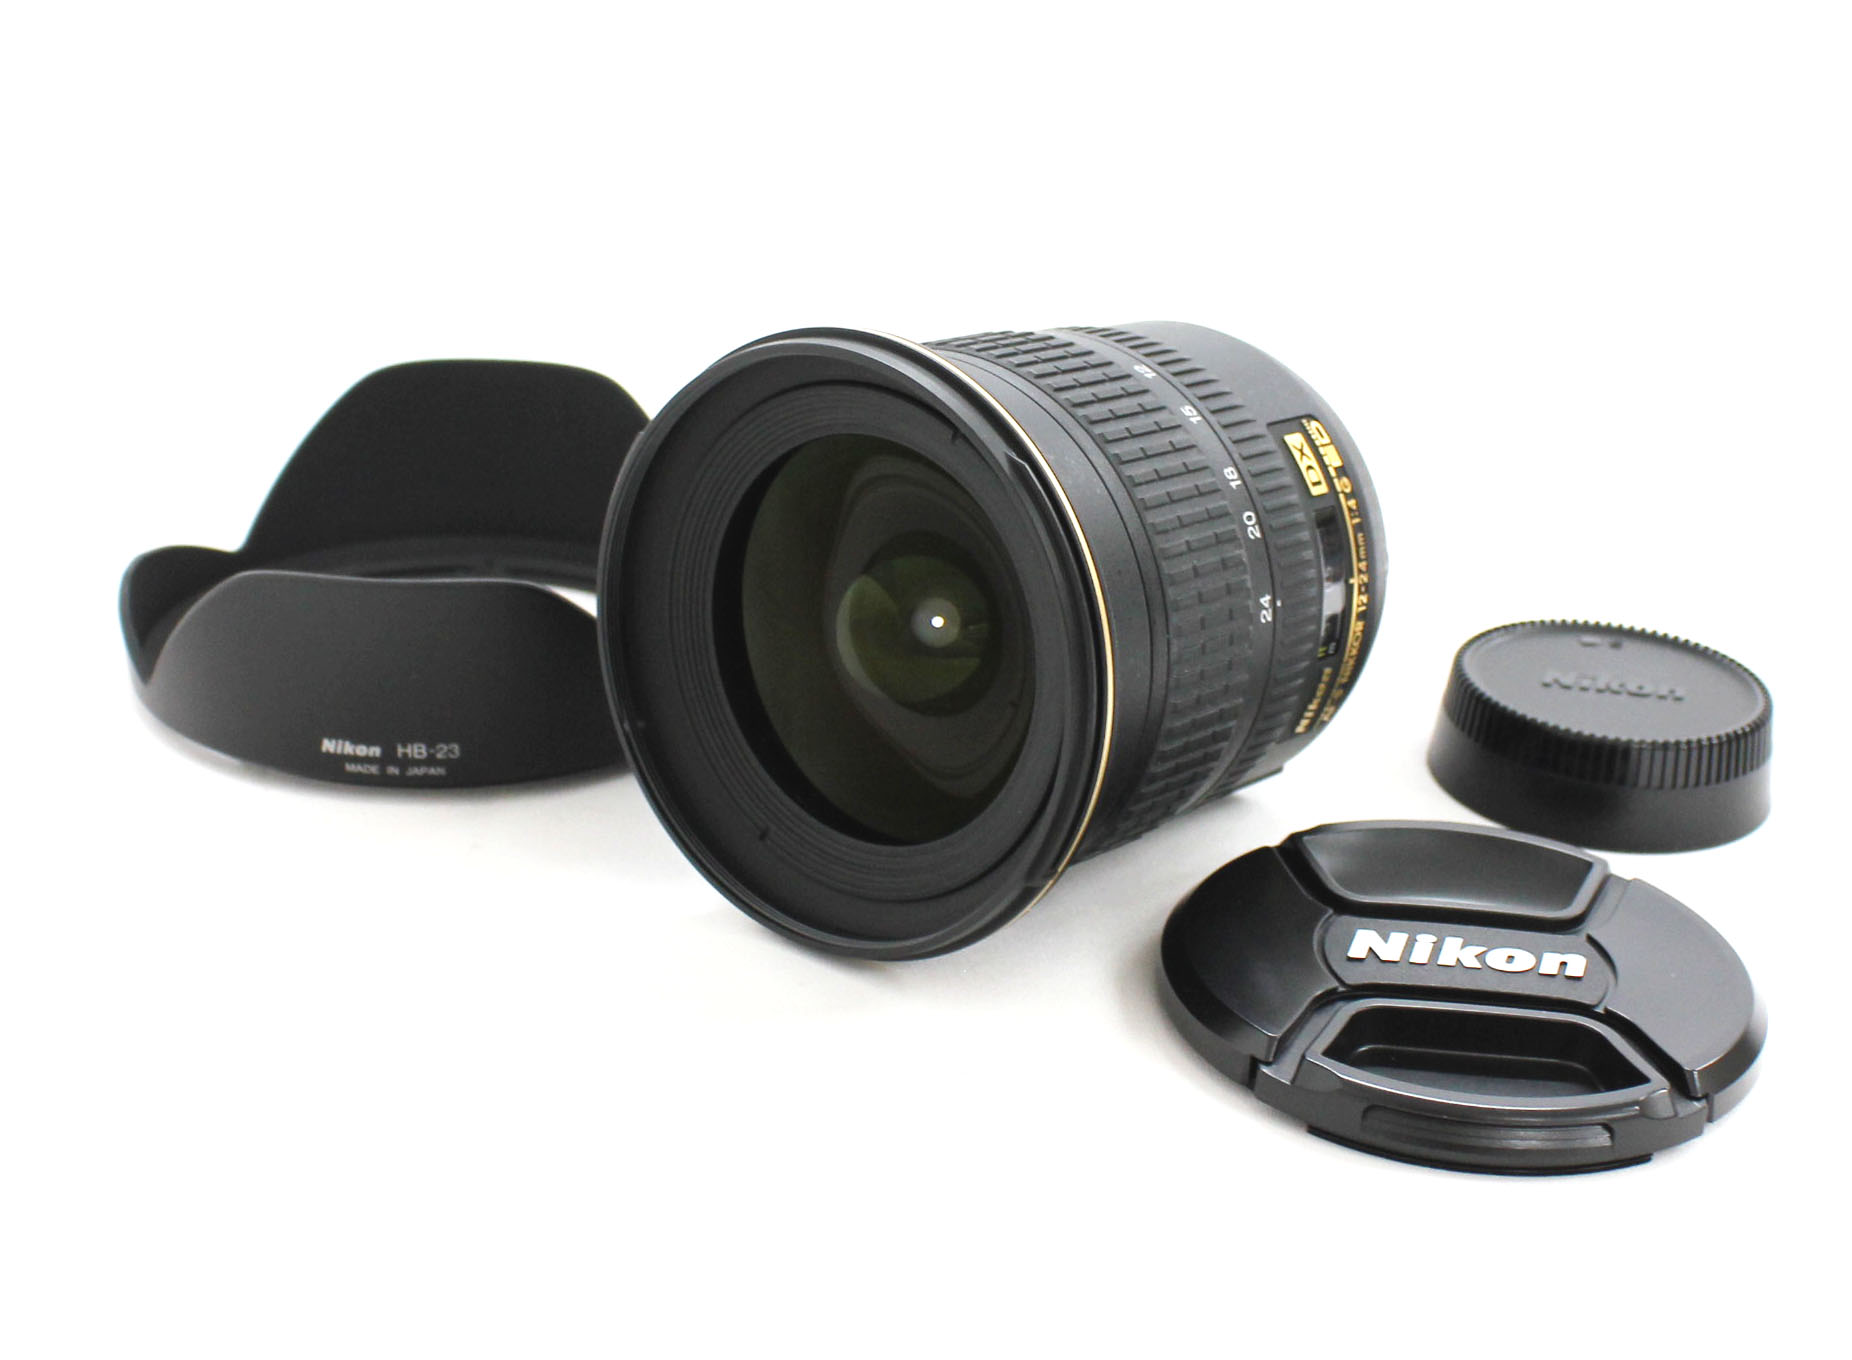 [Near Mint] Nikon AF-S Nikkor 12-24mm F/4 G ED DX SWM IF Aspherical Lens with HB-23 Lens Hood from Japan